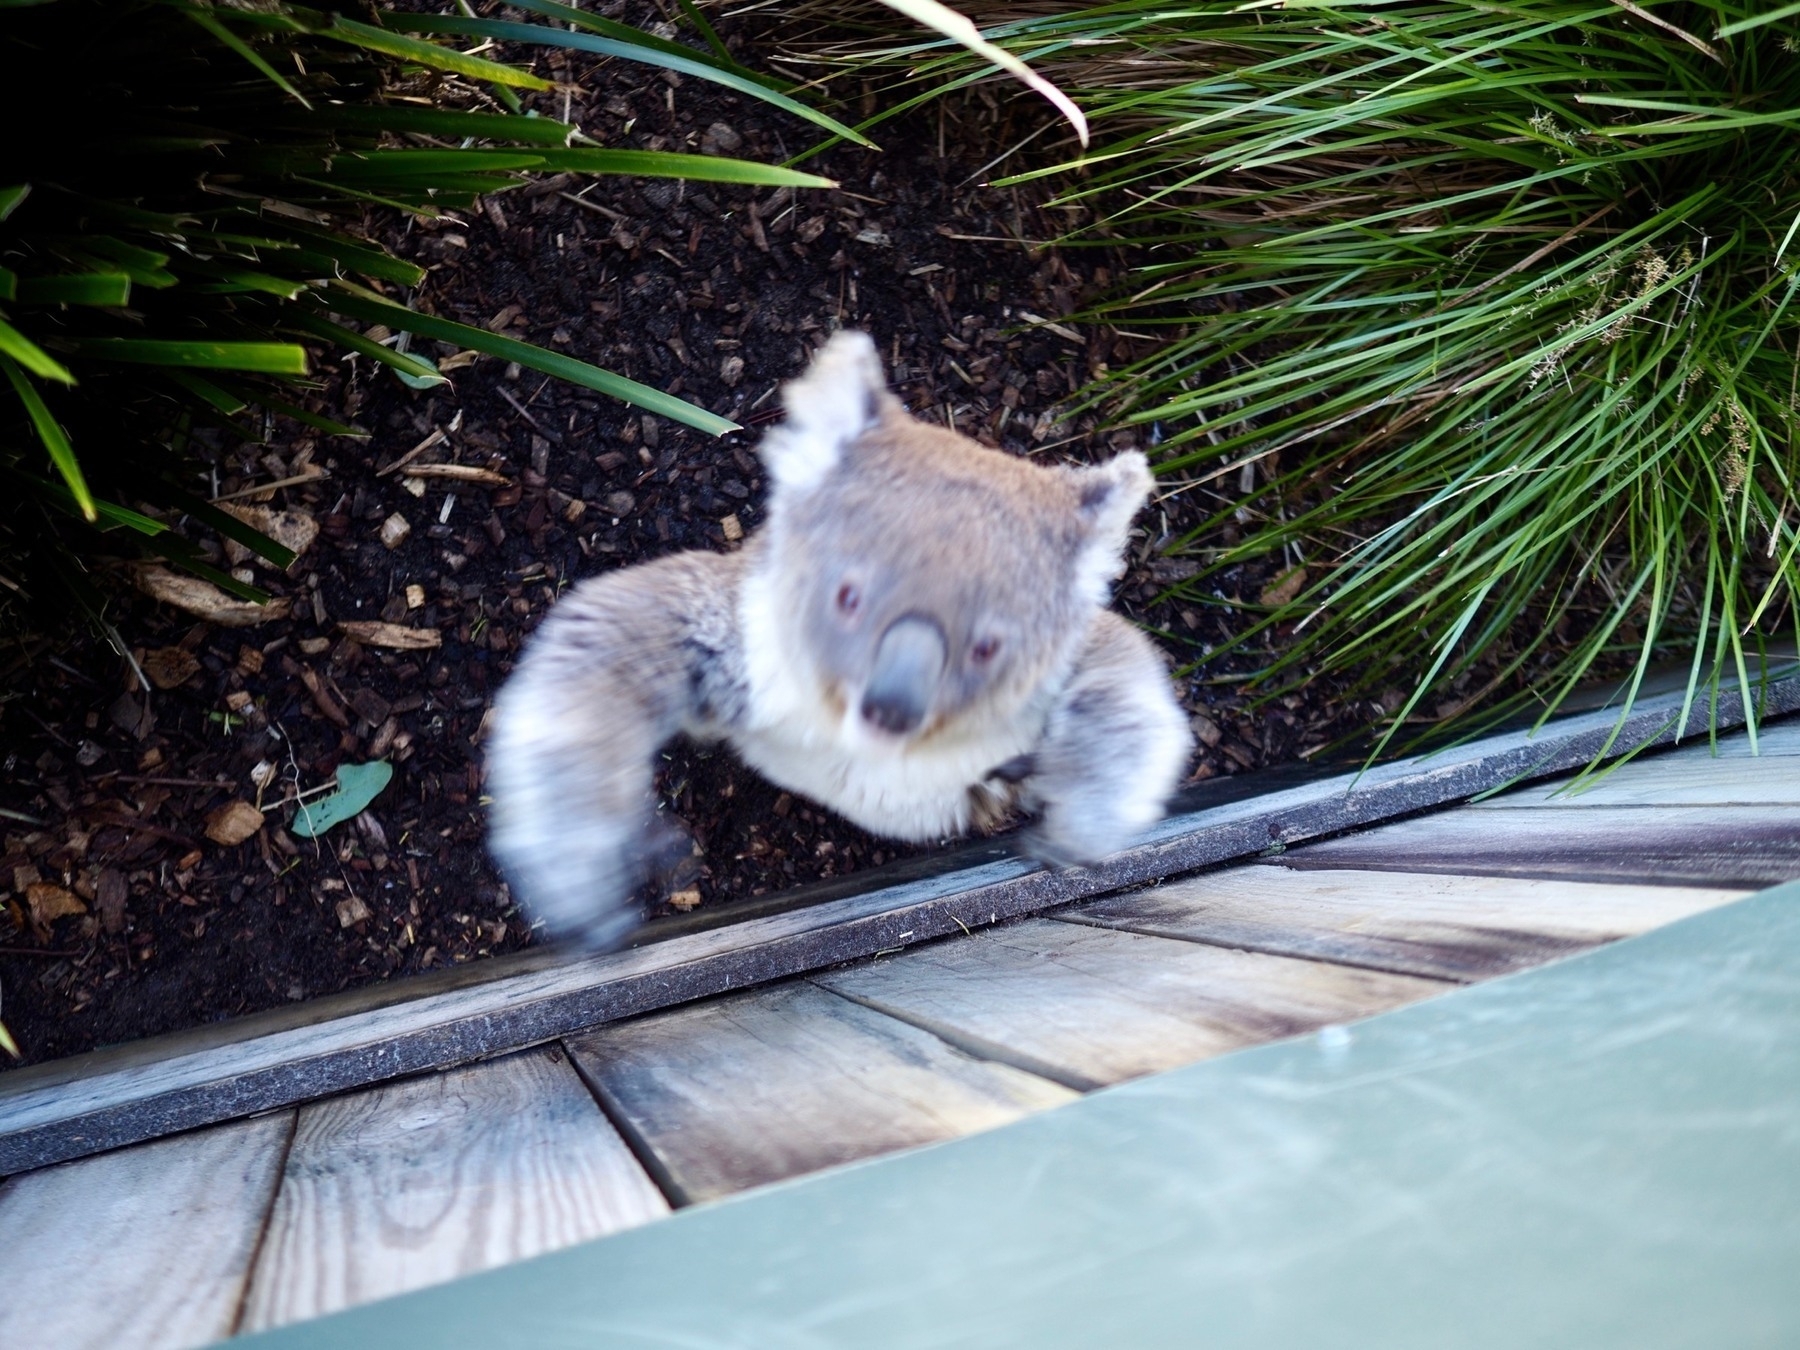 A koala leaps up a fence towards the camera